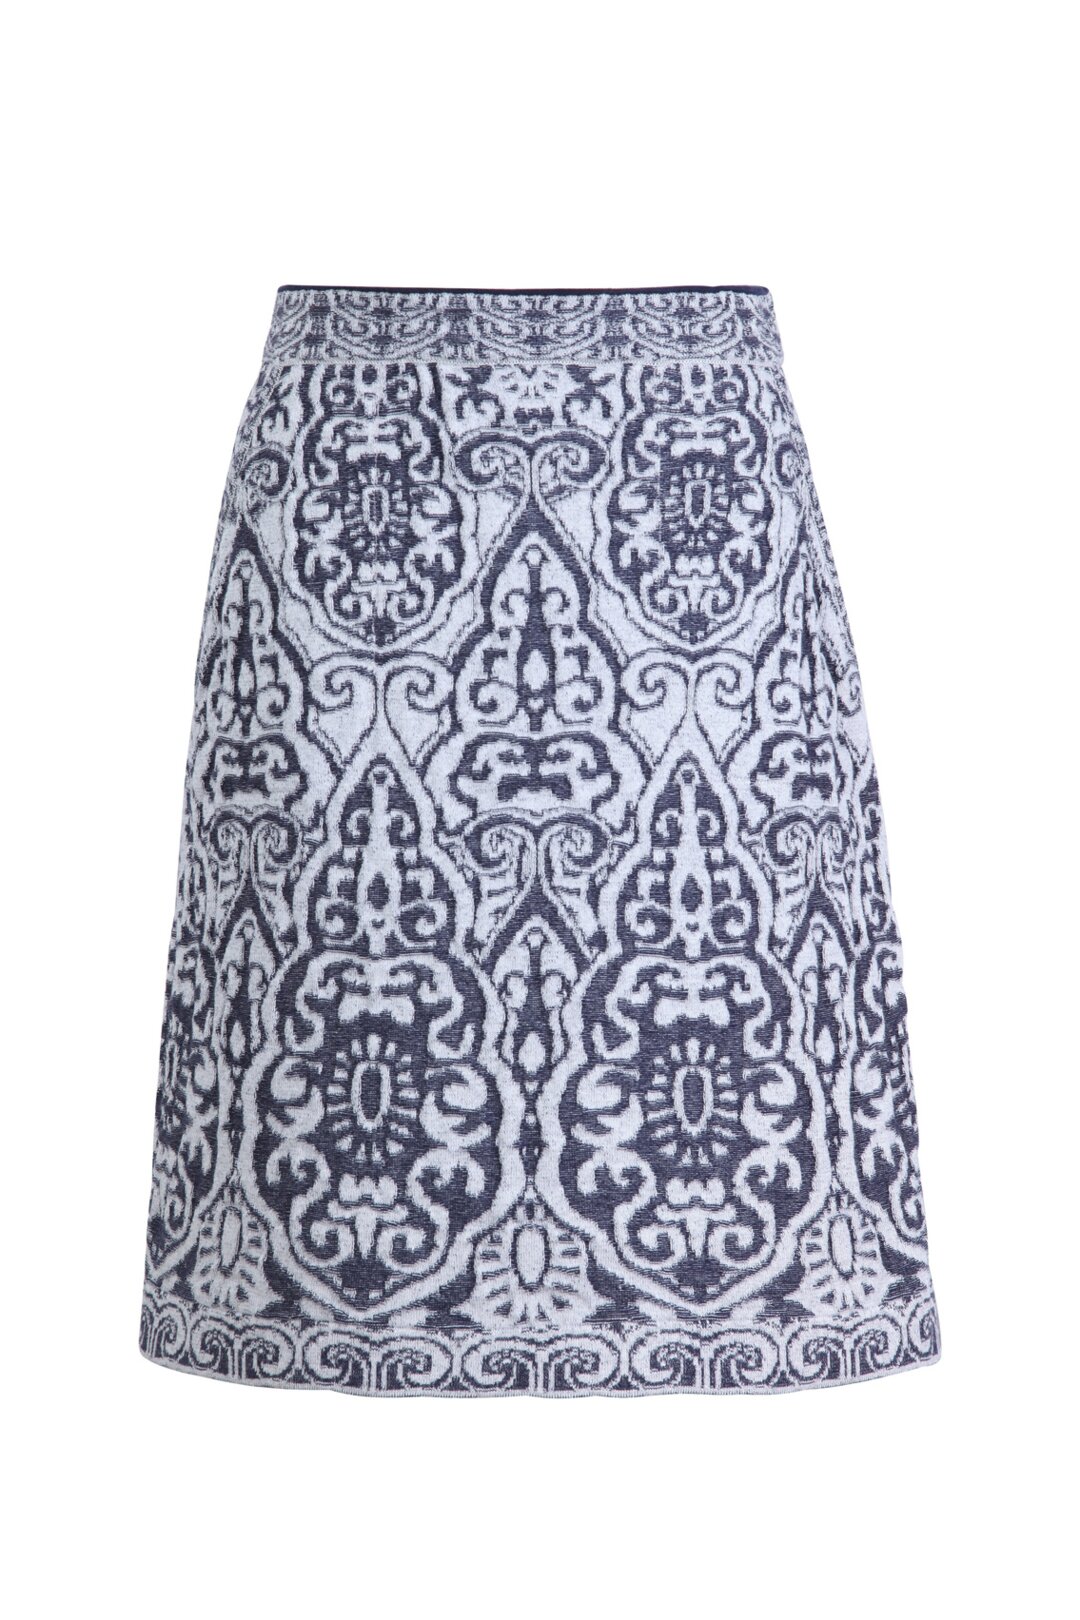 Mini Skirt, Filigree Pattern